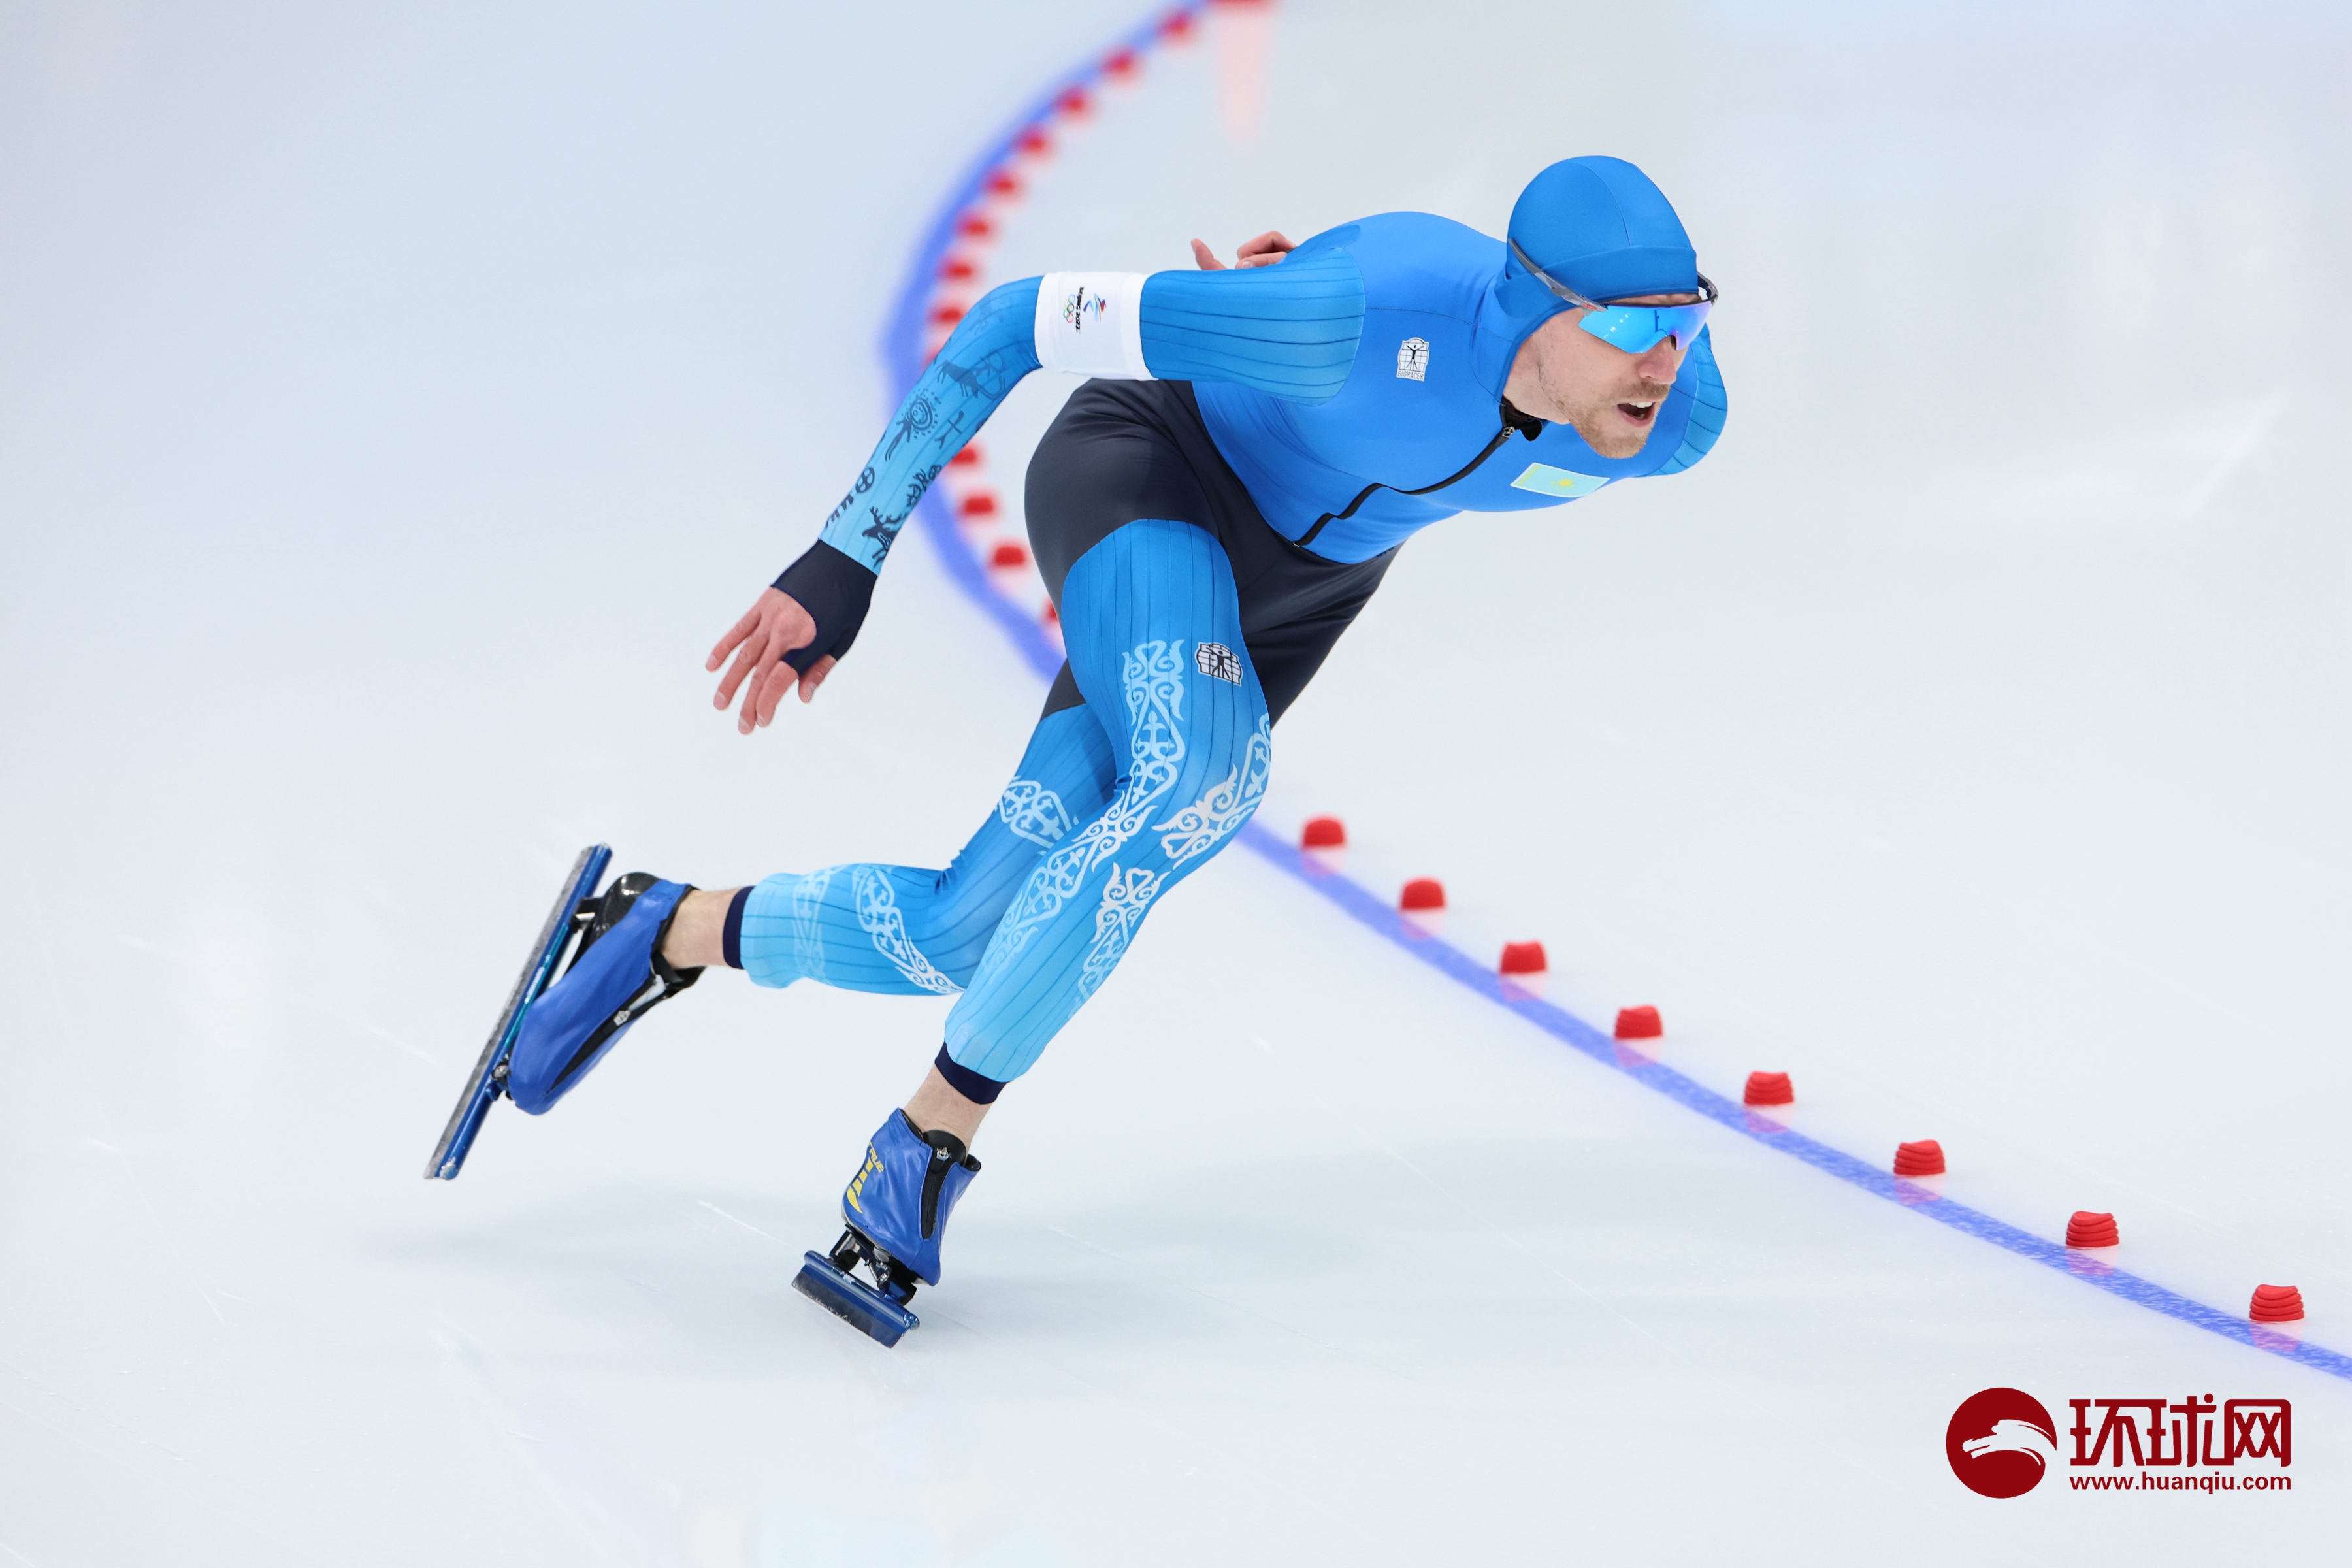 破奥运会纪录!高亭宇获速度滑冰男子500米冠军